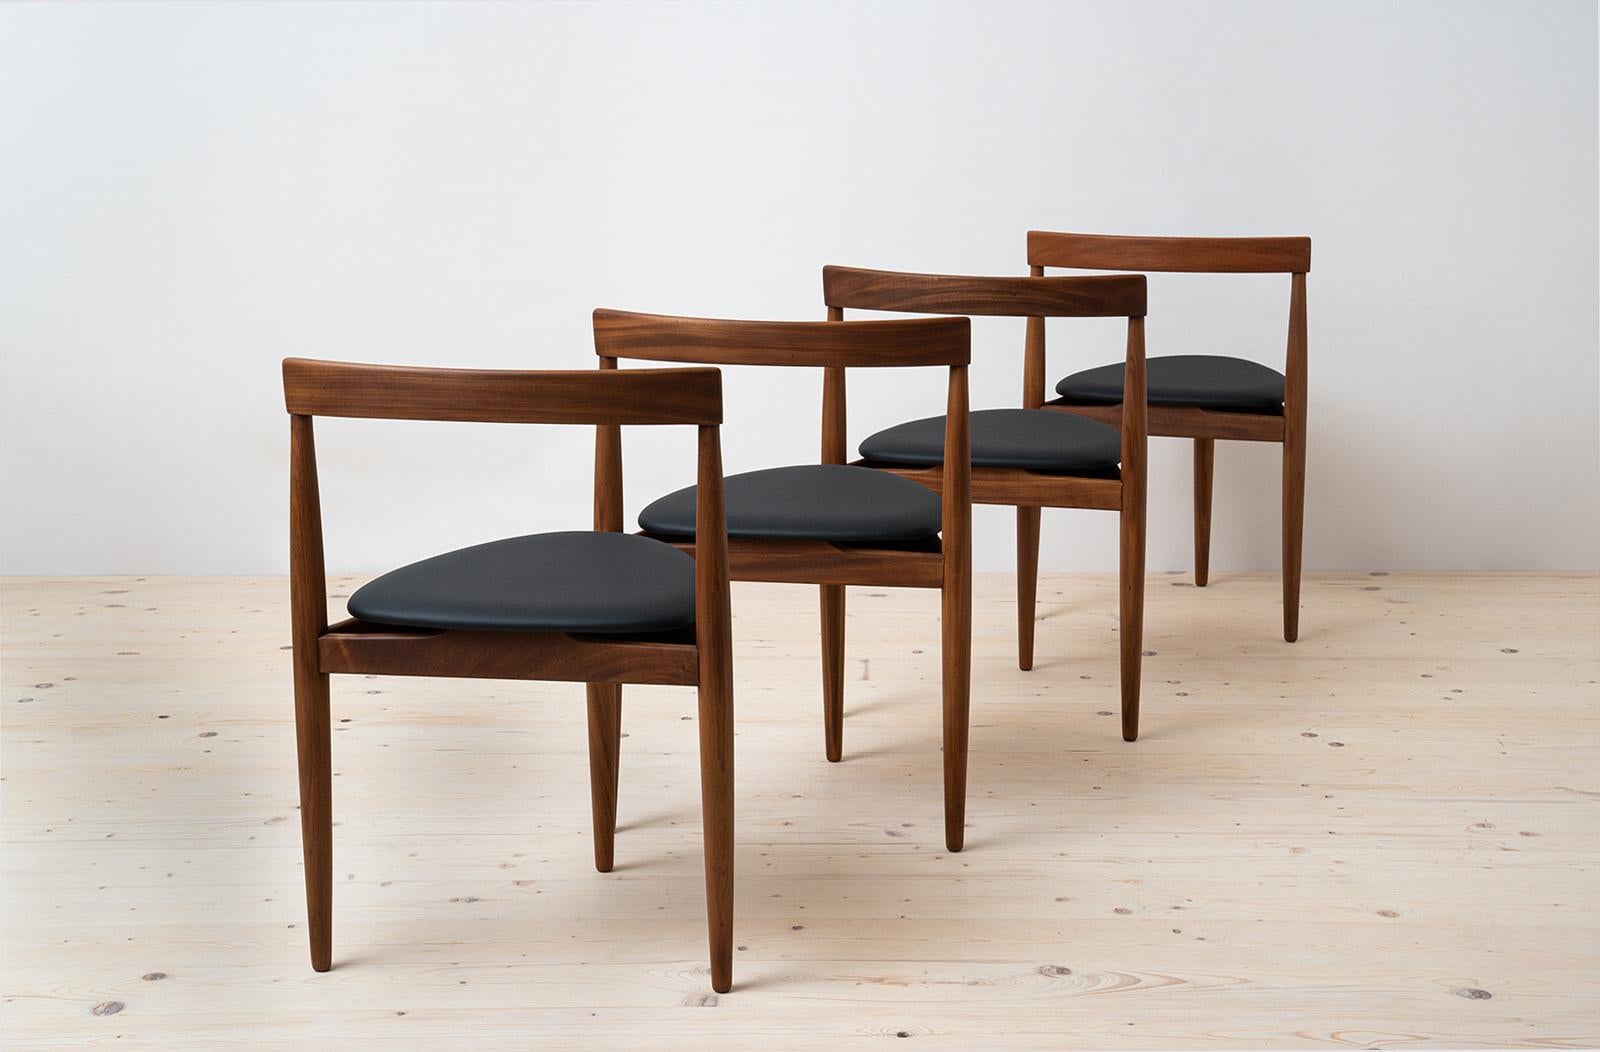 Esszimmer-Set aus Teakholz von Hans Olsen, 4 Stühle, runder Tisch, dänische Moderne, 1950er Jahre (Kunstleder)